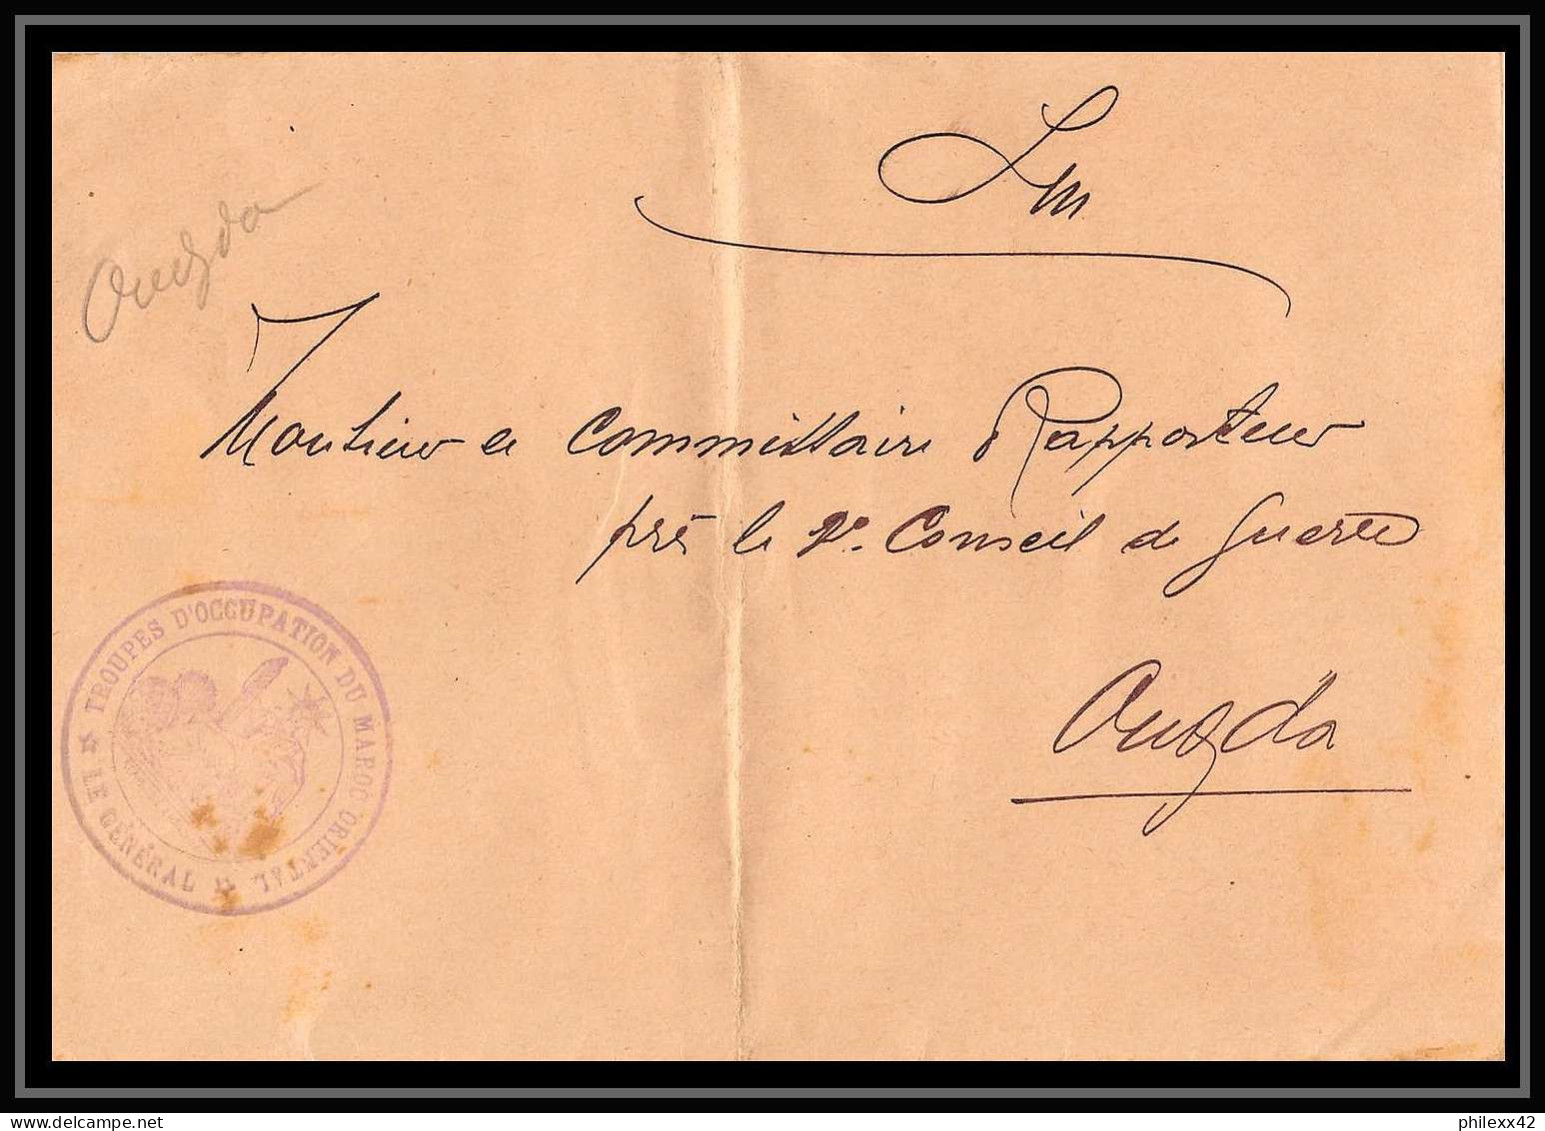 1210 lot 9 lettres France guerre général commandant Oudjda 1915 dont service de santé cover occupation du maroc War